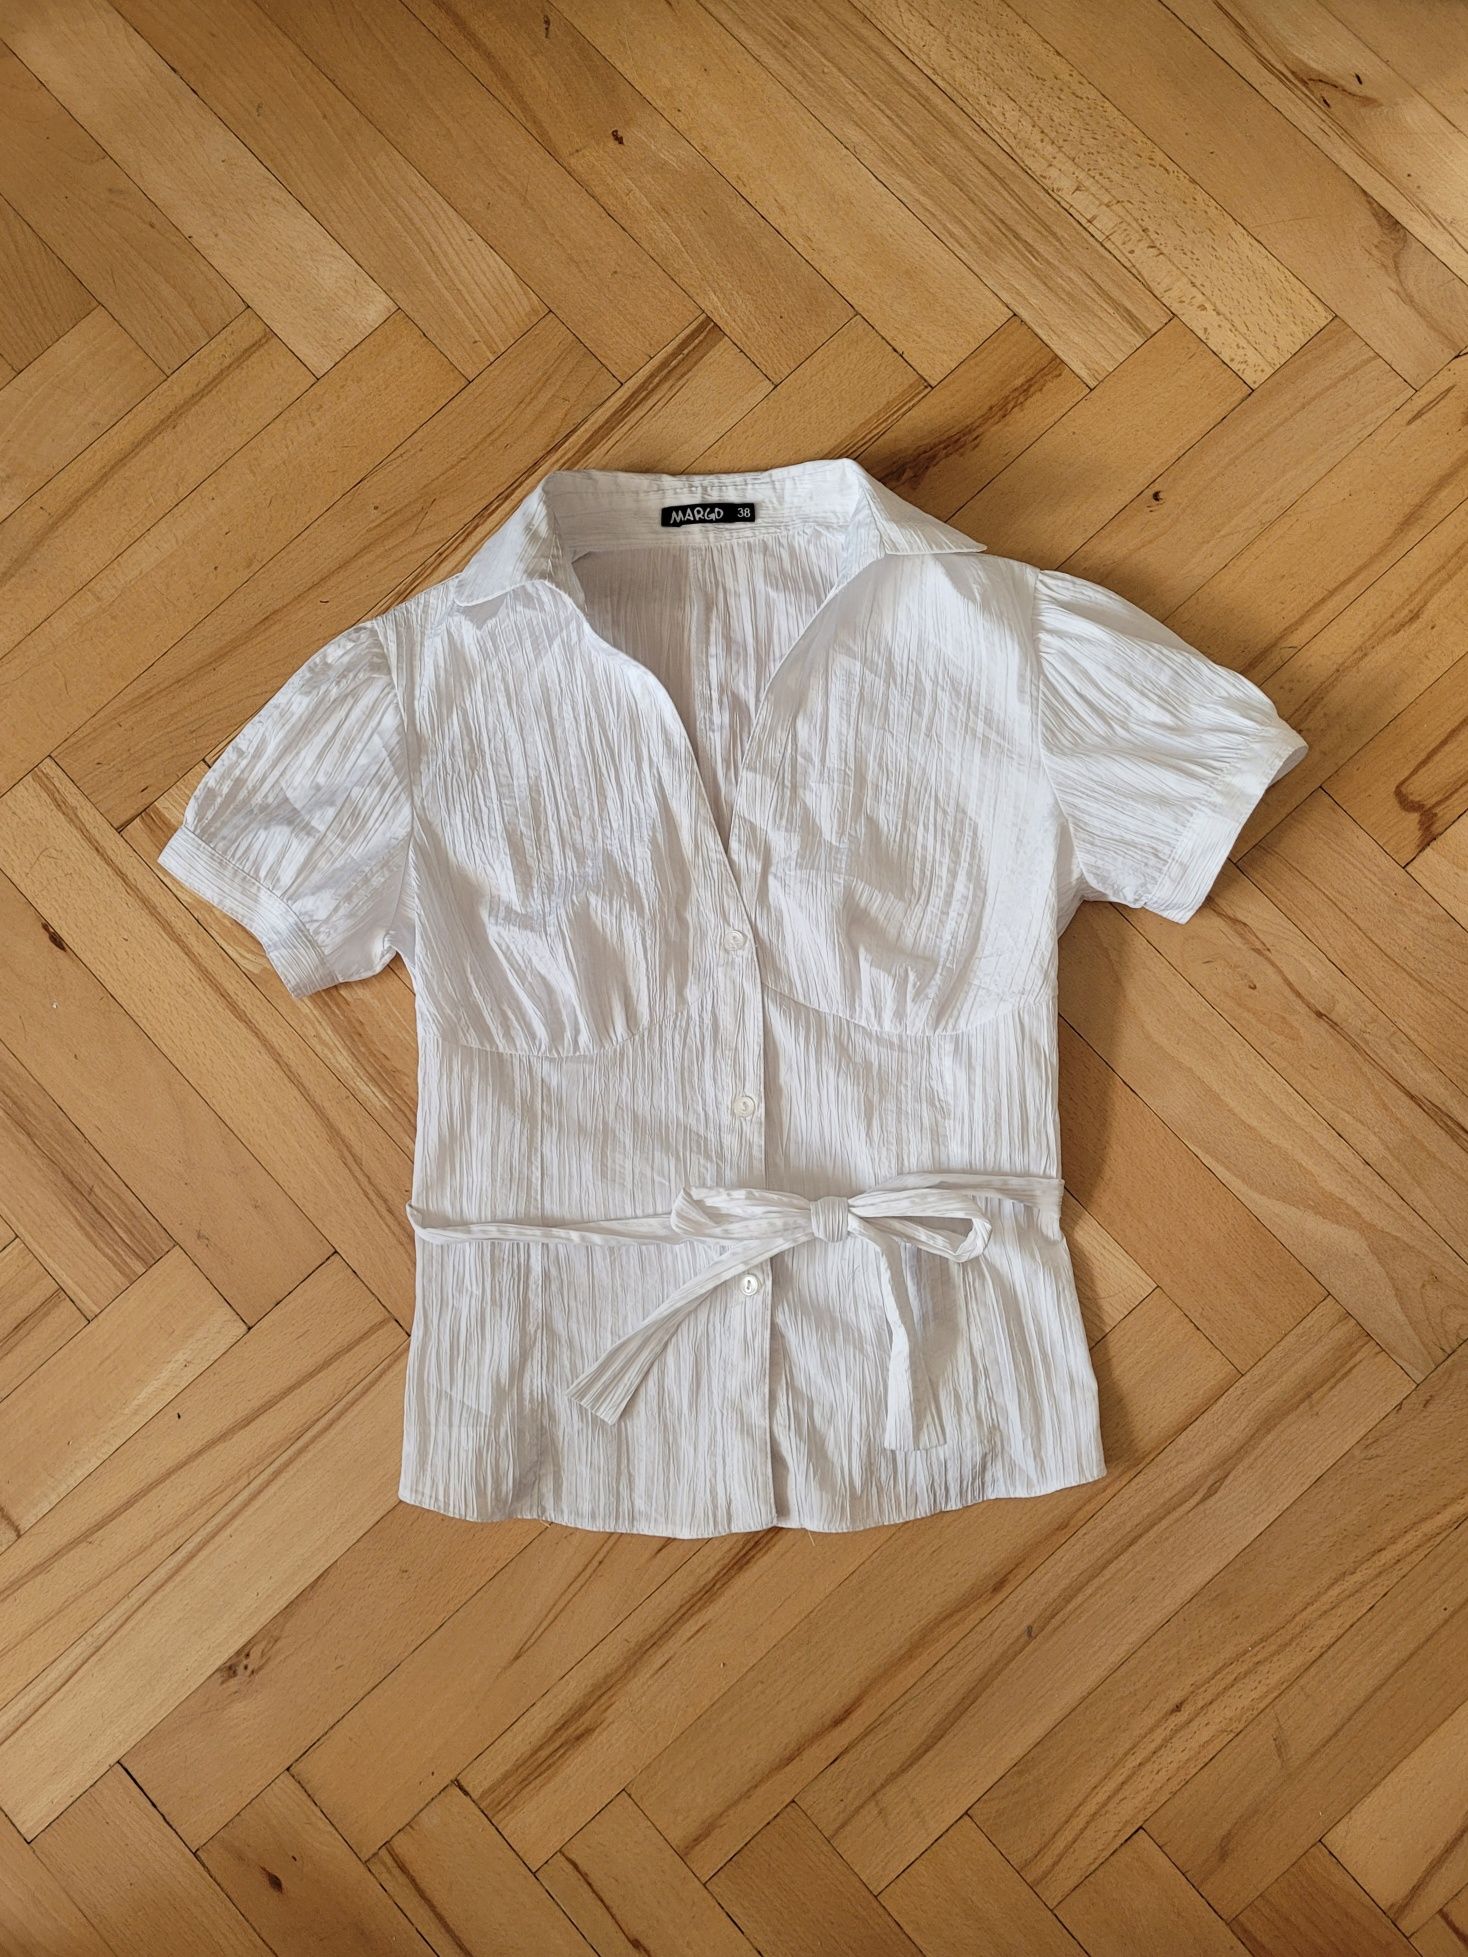 Bluzka damska 38 koszula biała krótki rękaw